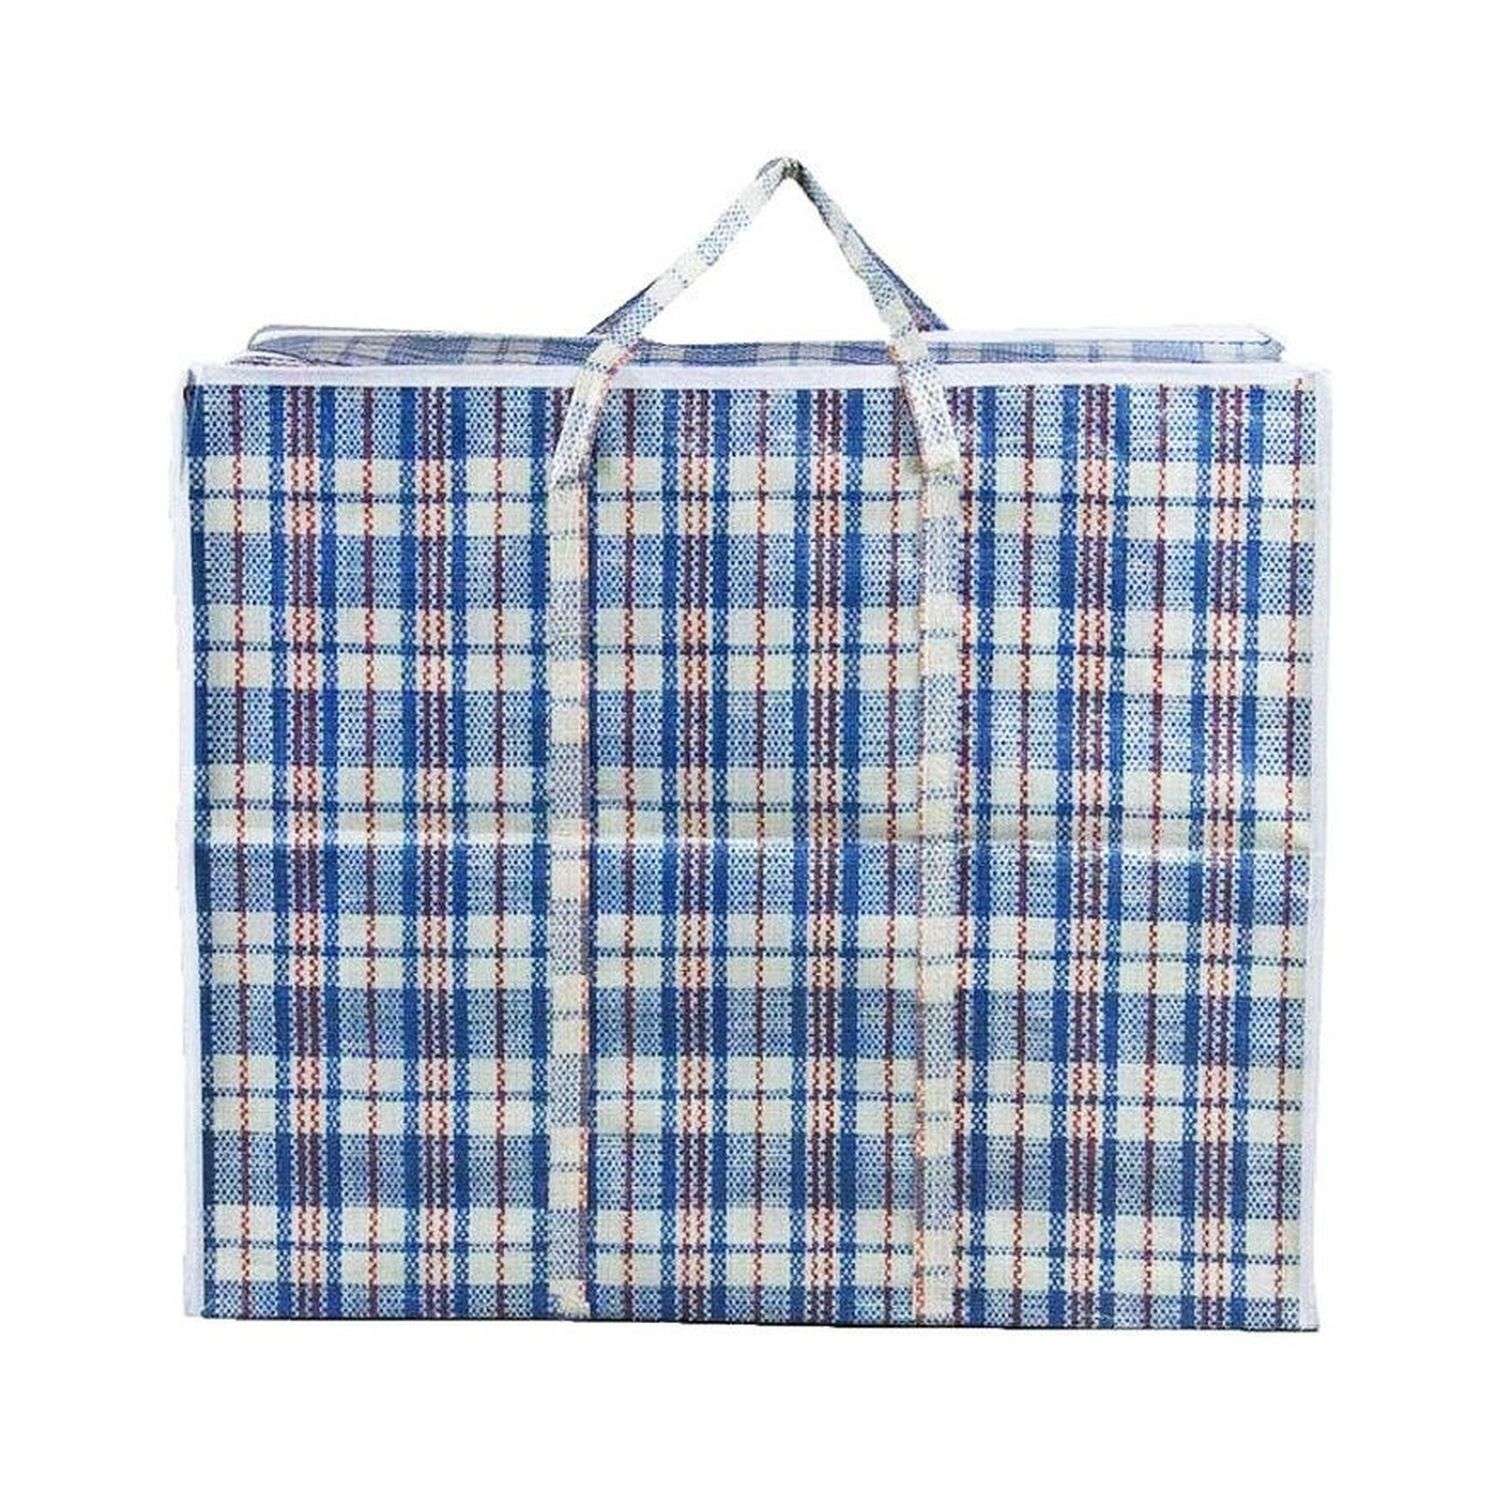 Хозяйственная сумка Seichi на молнии 60х40х20 см синяя - фото 1